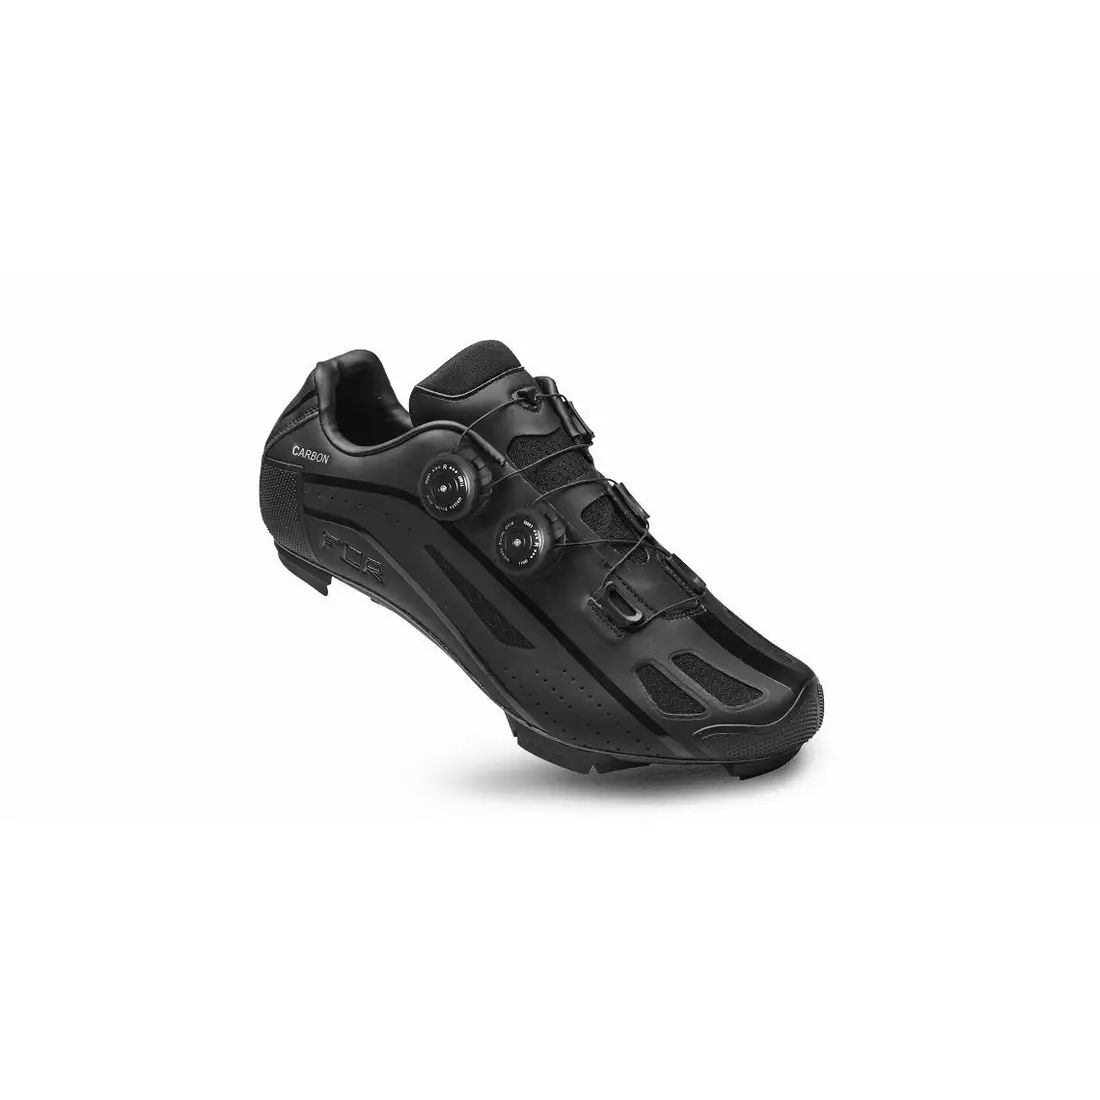 FLR F-95X MTB Cycling Shoes, full Carbon, black